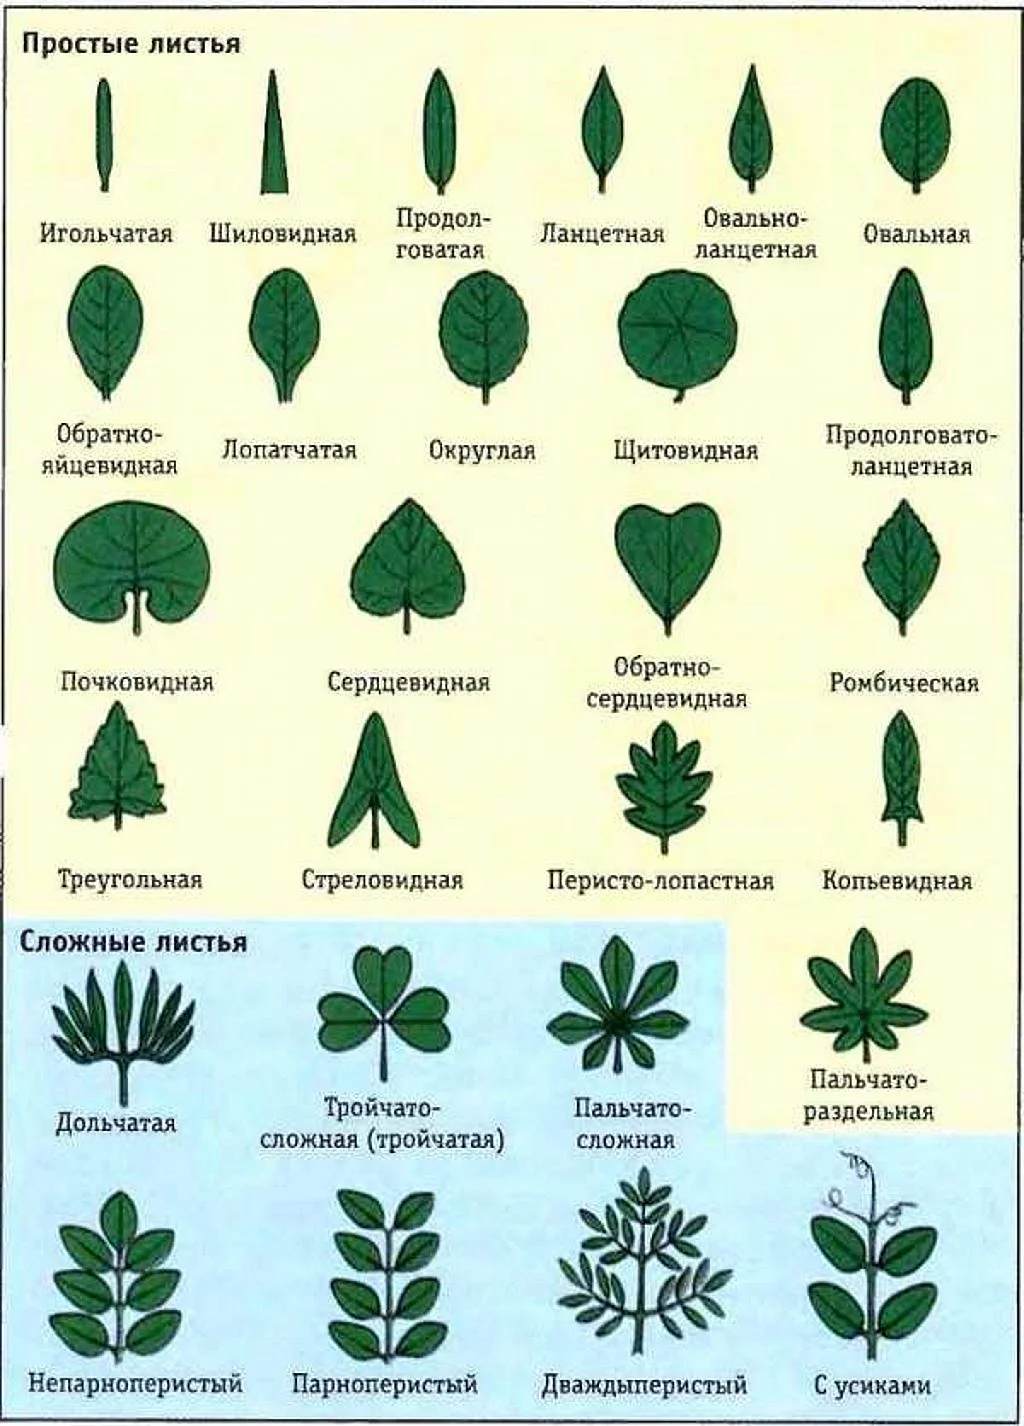 Листья различных деревьев с подписями